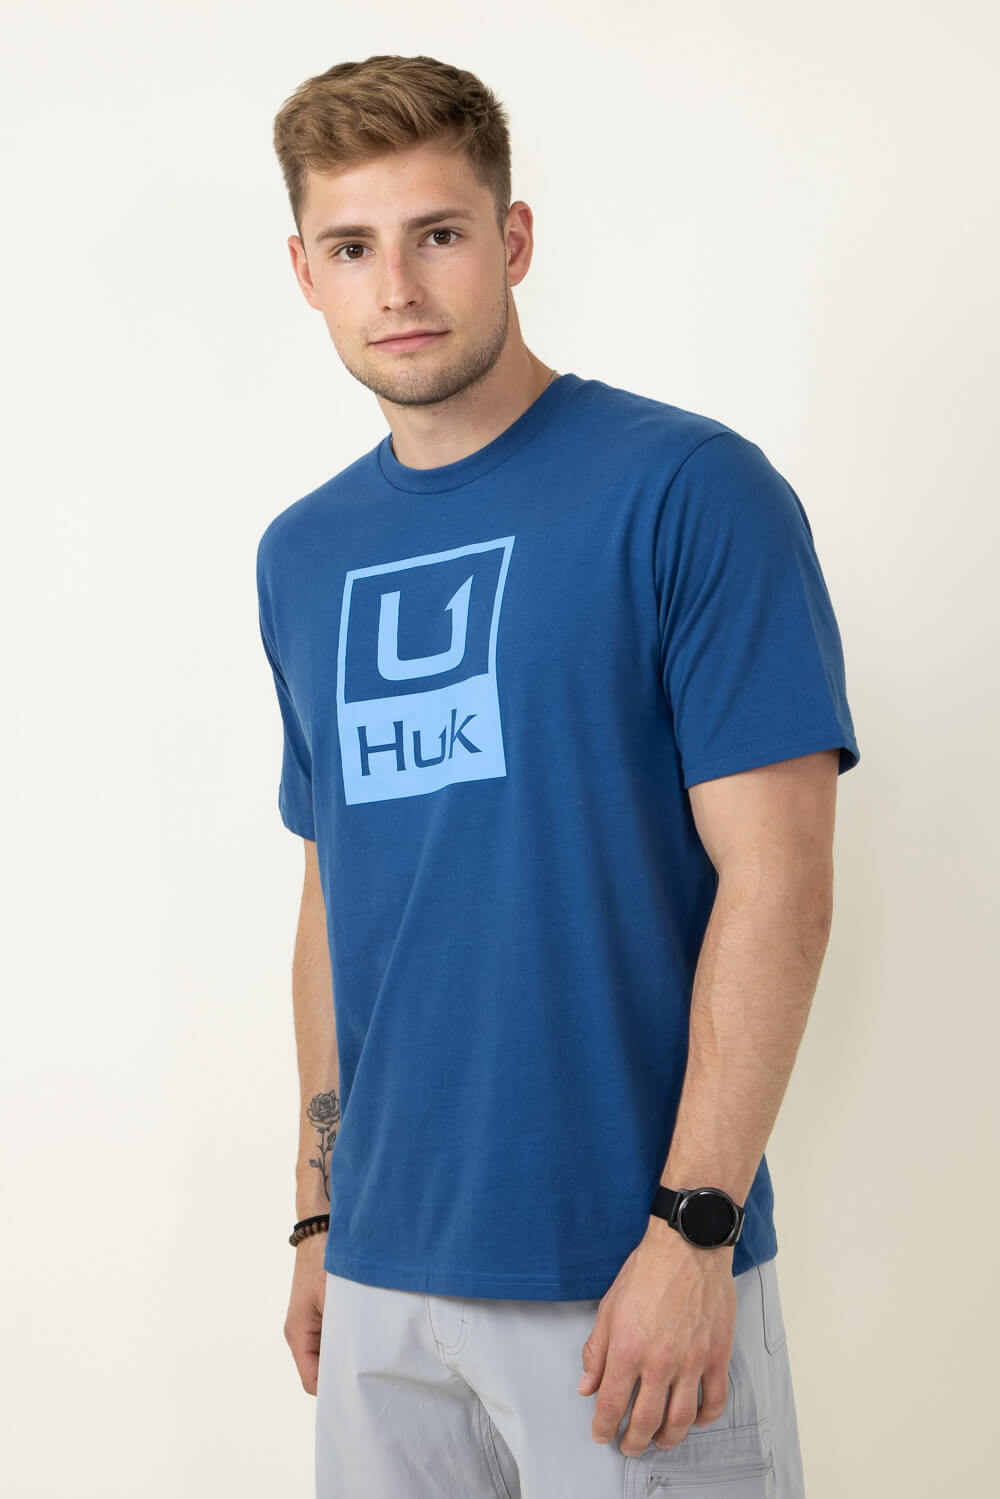 Huk Men's Stacked Logo Tee in Set Sail - L